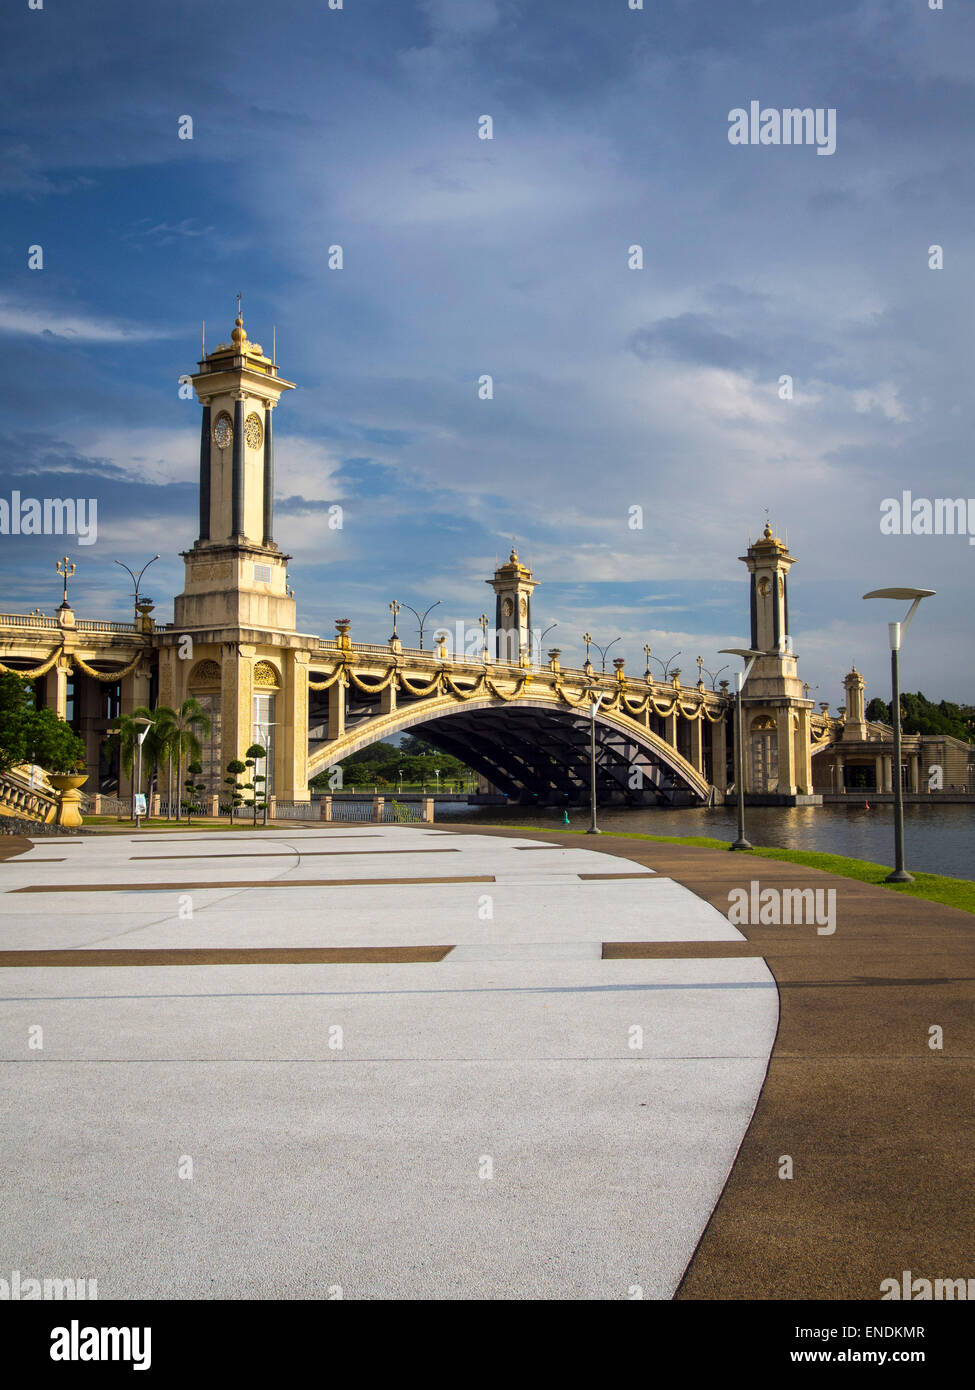 Un puente con la clásica arquitectura, visto desde la distancia contra un cielo azul Foto de stock